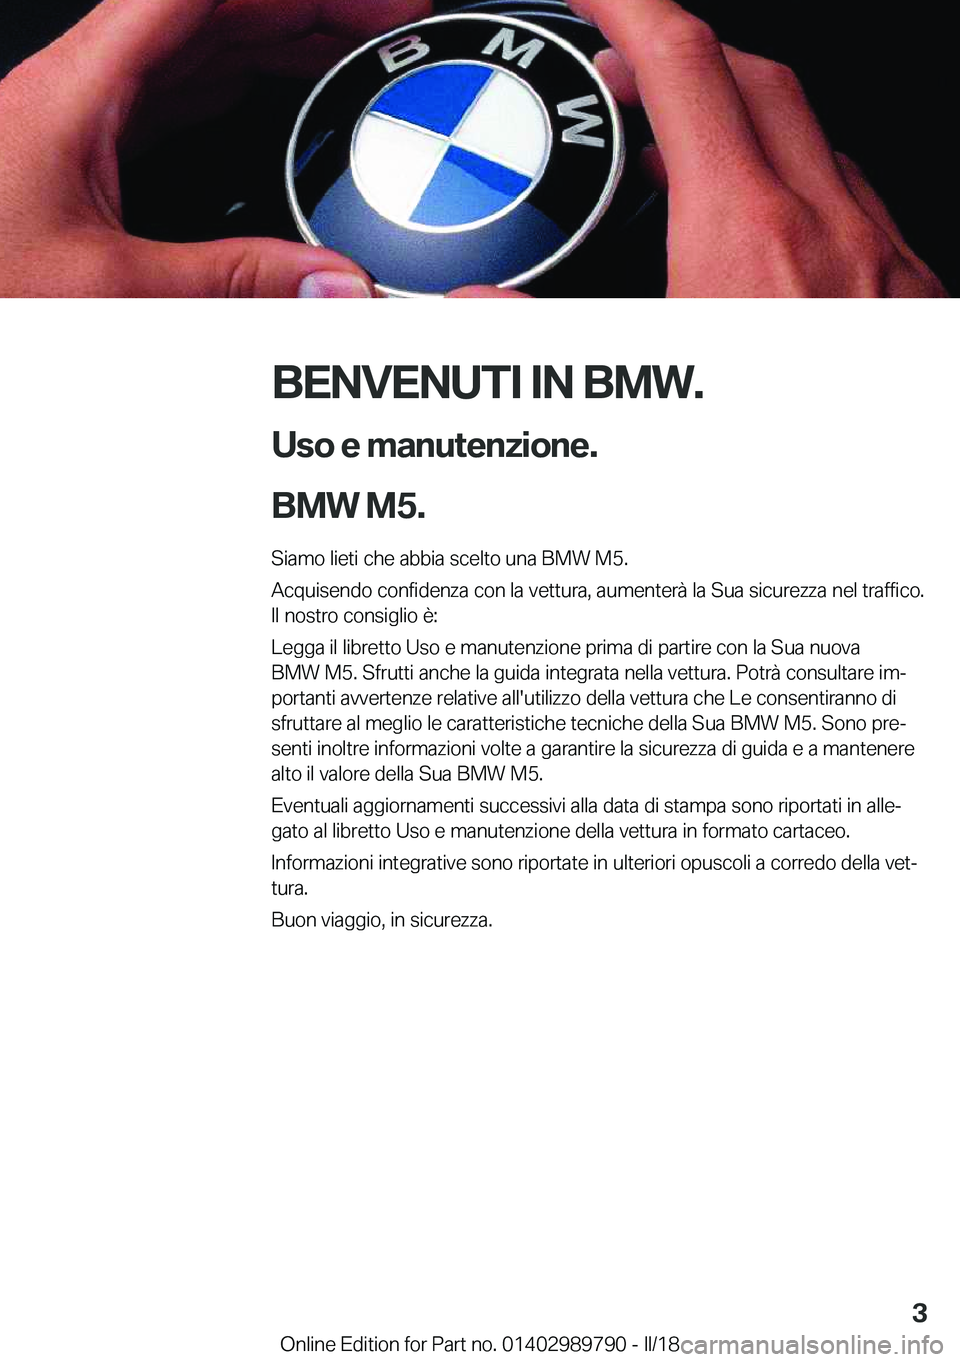 BMW M5 2018  Libretti Di Uso E manutenzione (in Italian) �B�E�N�V�E�N�U�T�I��I�N��B�M�W�.�U�s�o��e��m�a�n�u�t�e�n�z�i�o�n�e�.
�B�M�W��M�5�.
�S�i�a�m�o� �l�i�e�t�i� �c�h�e� �a�b�b�i�a� �s�c�e�l�t�o� �u�n�a� �B�M�W� �M�5�.
�A�c�q�u�i�s�e�n�d�o� �c�o�n�f�